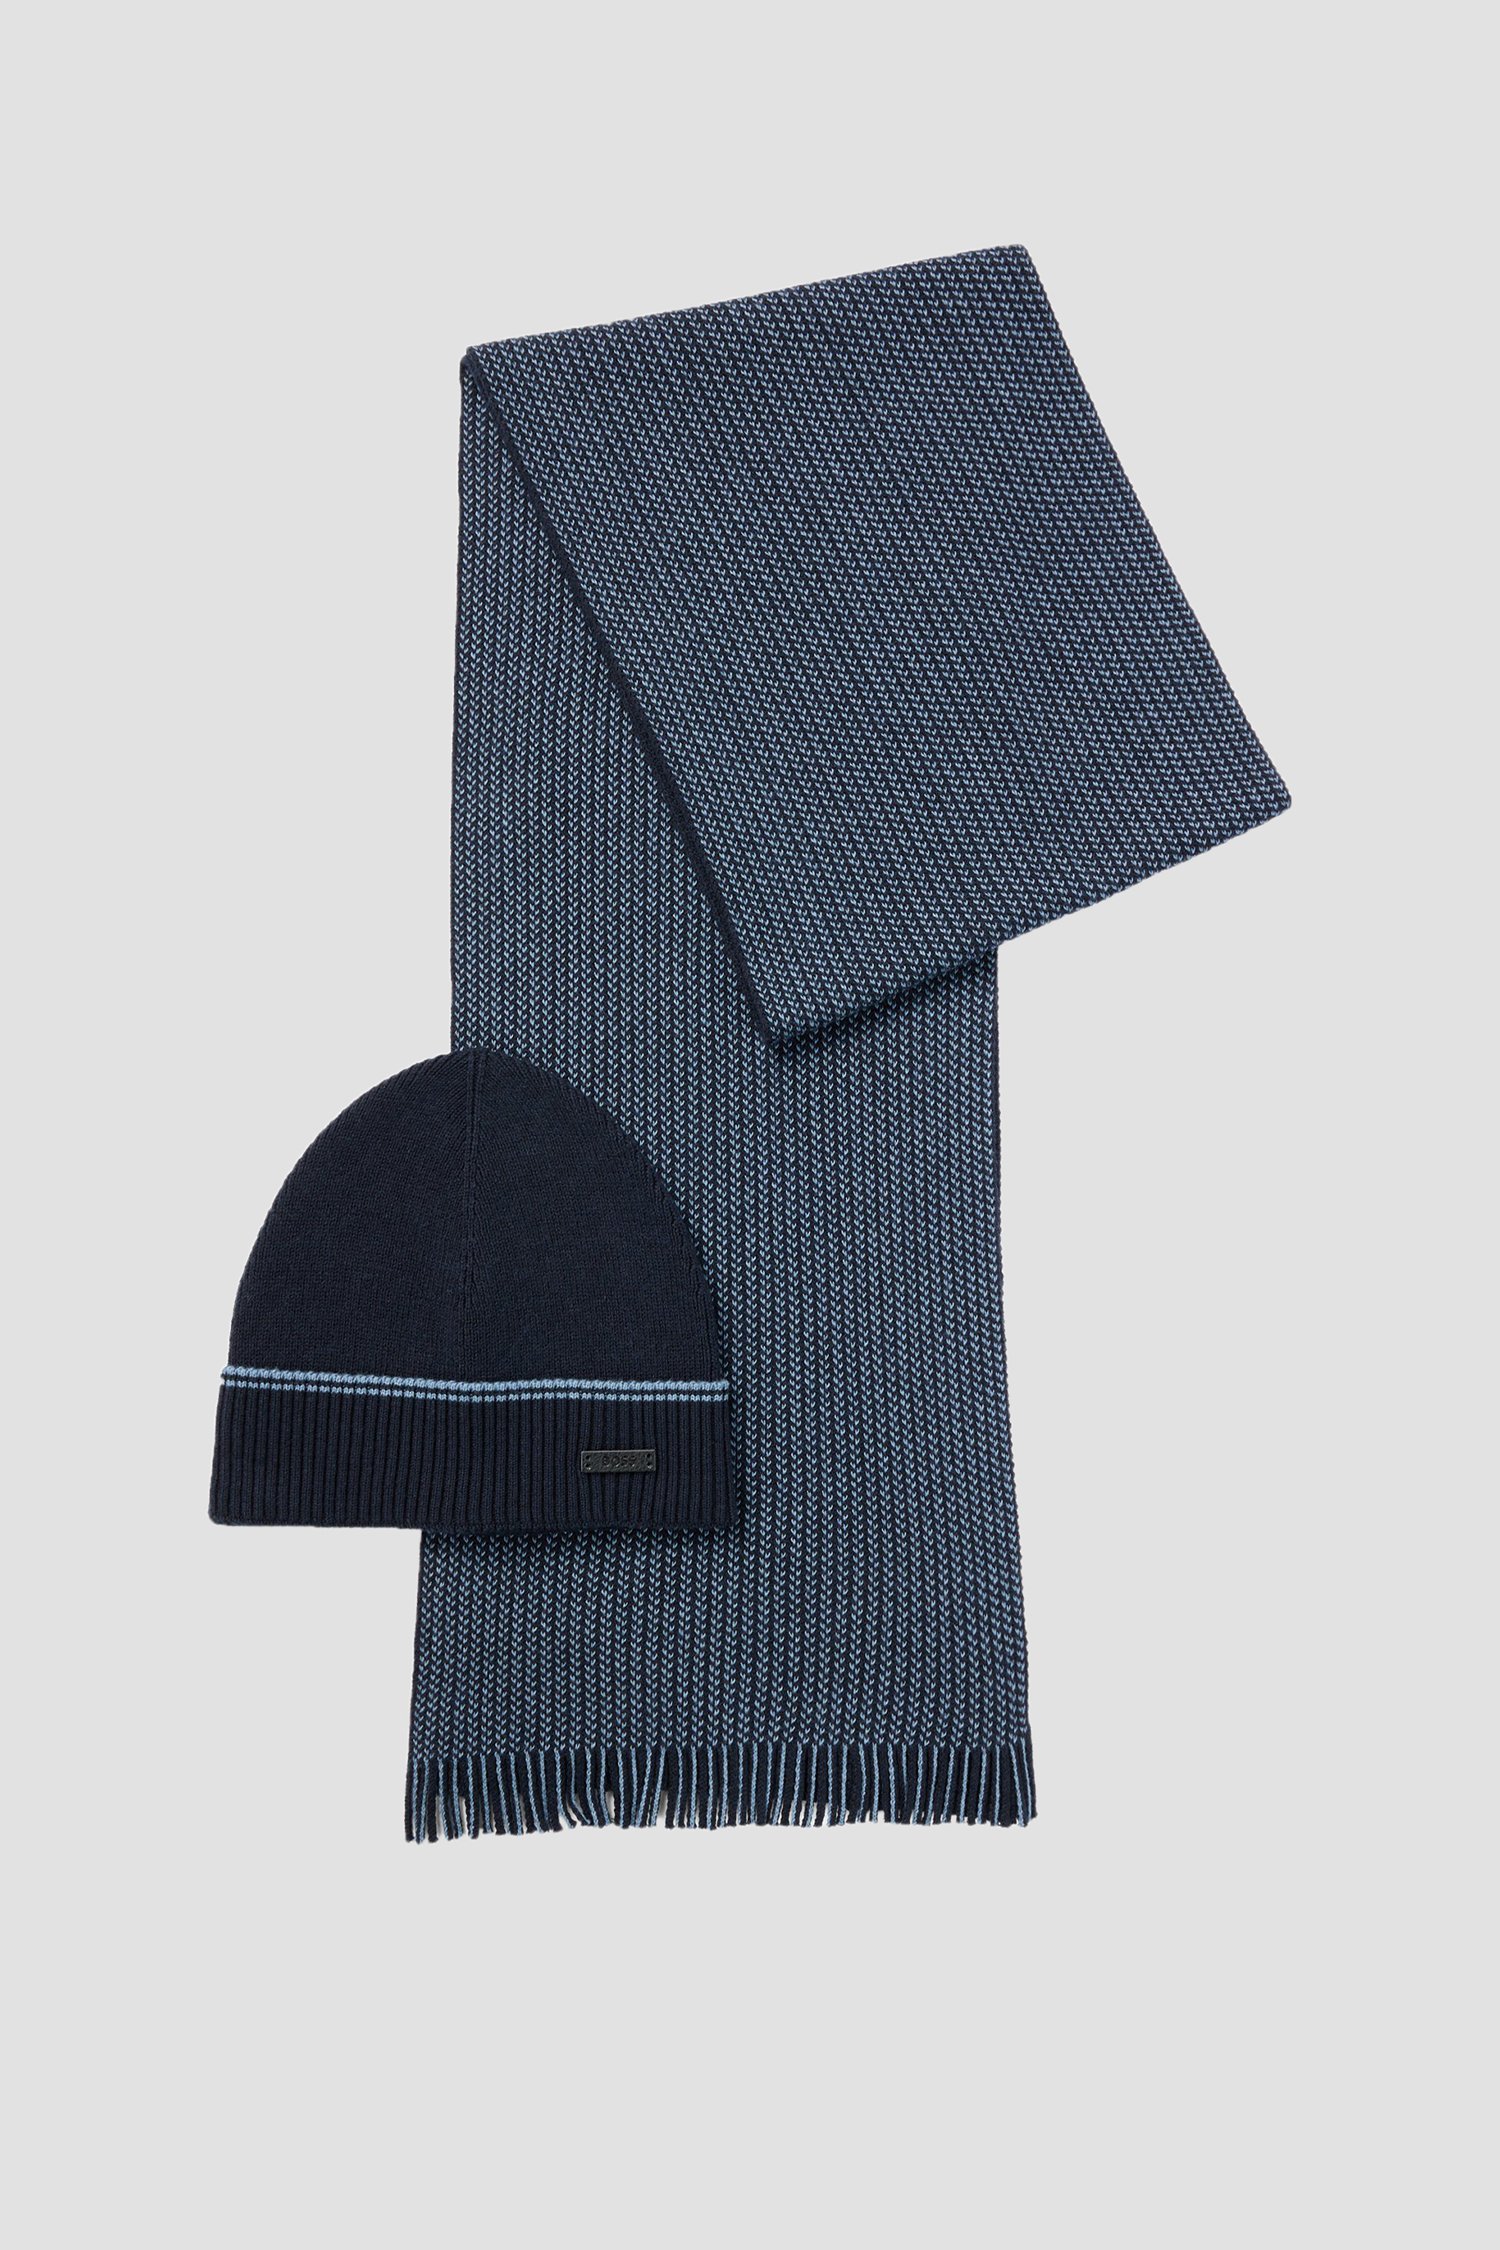 Мужской набор аксессуаров (шапка, шарф) 1